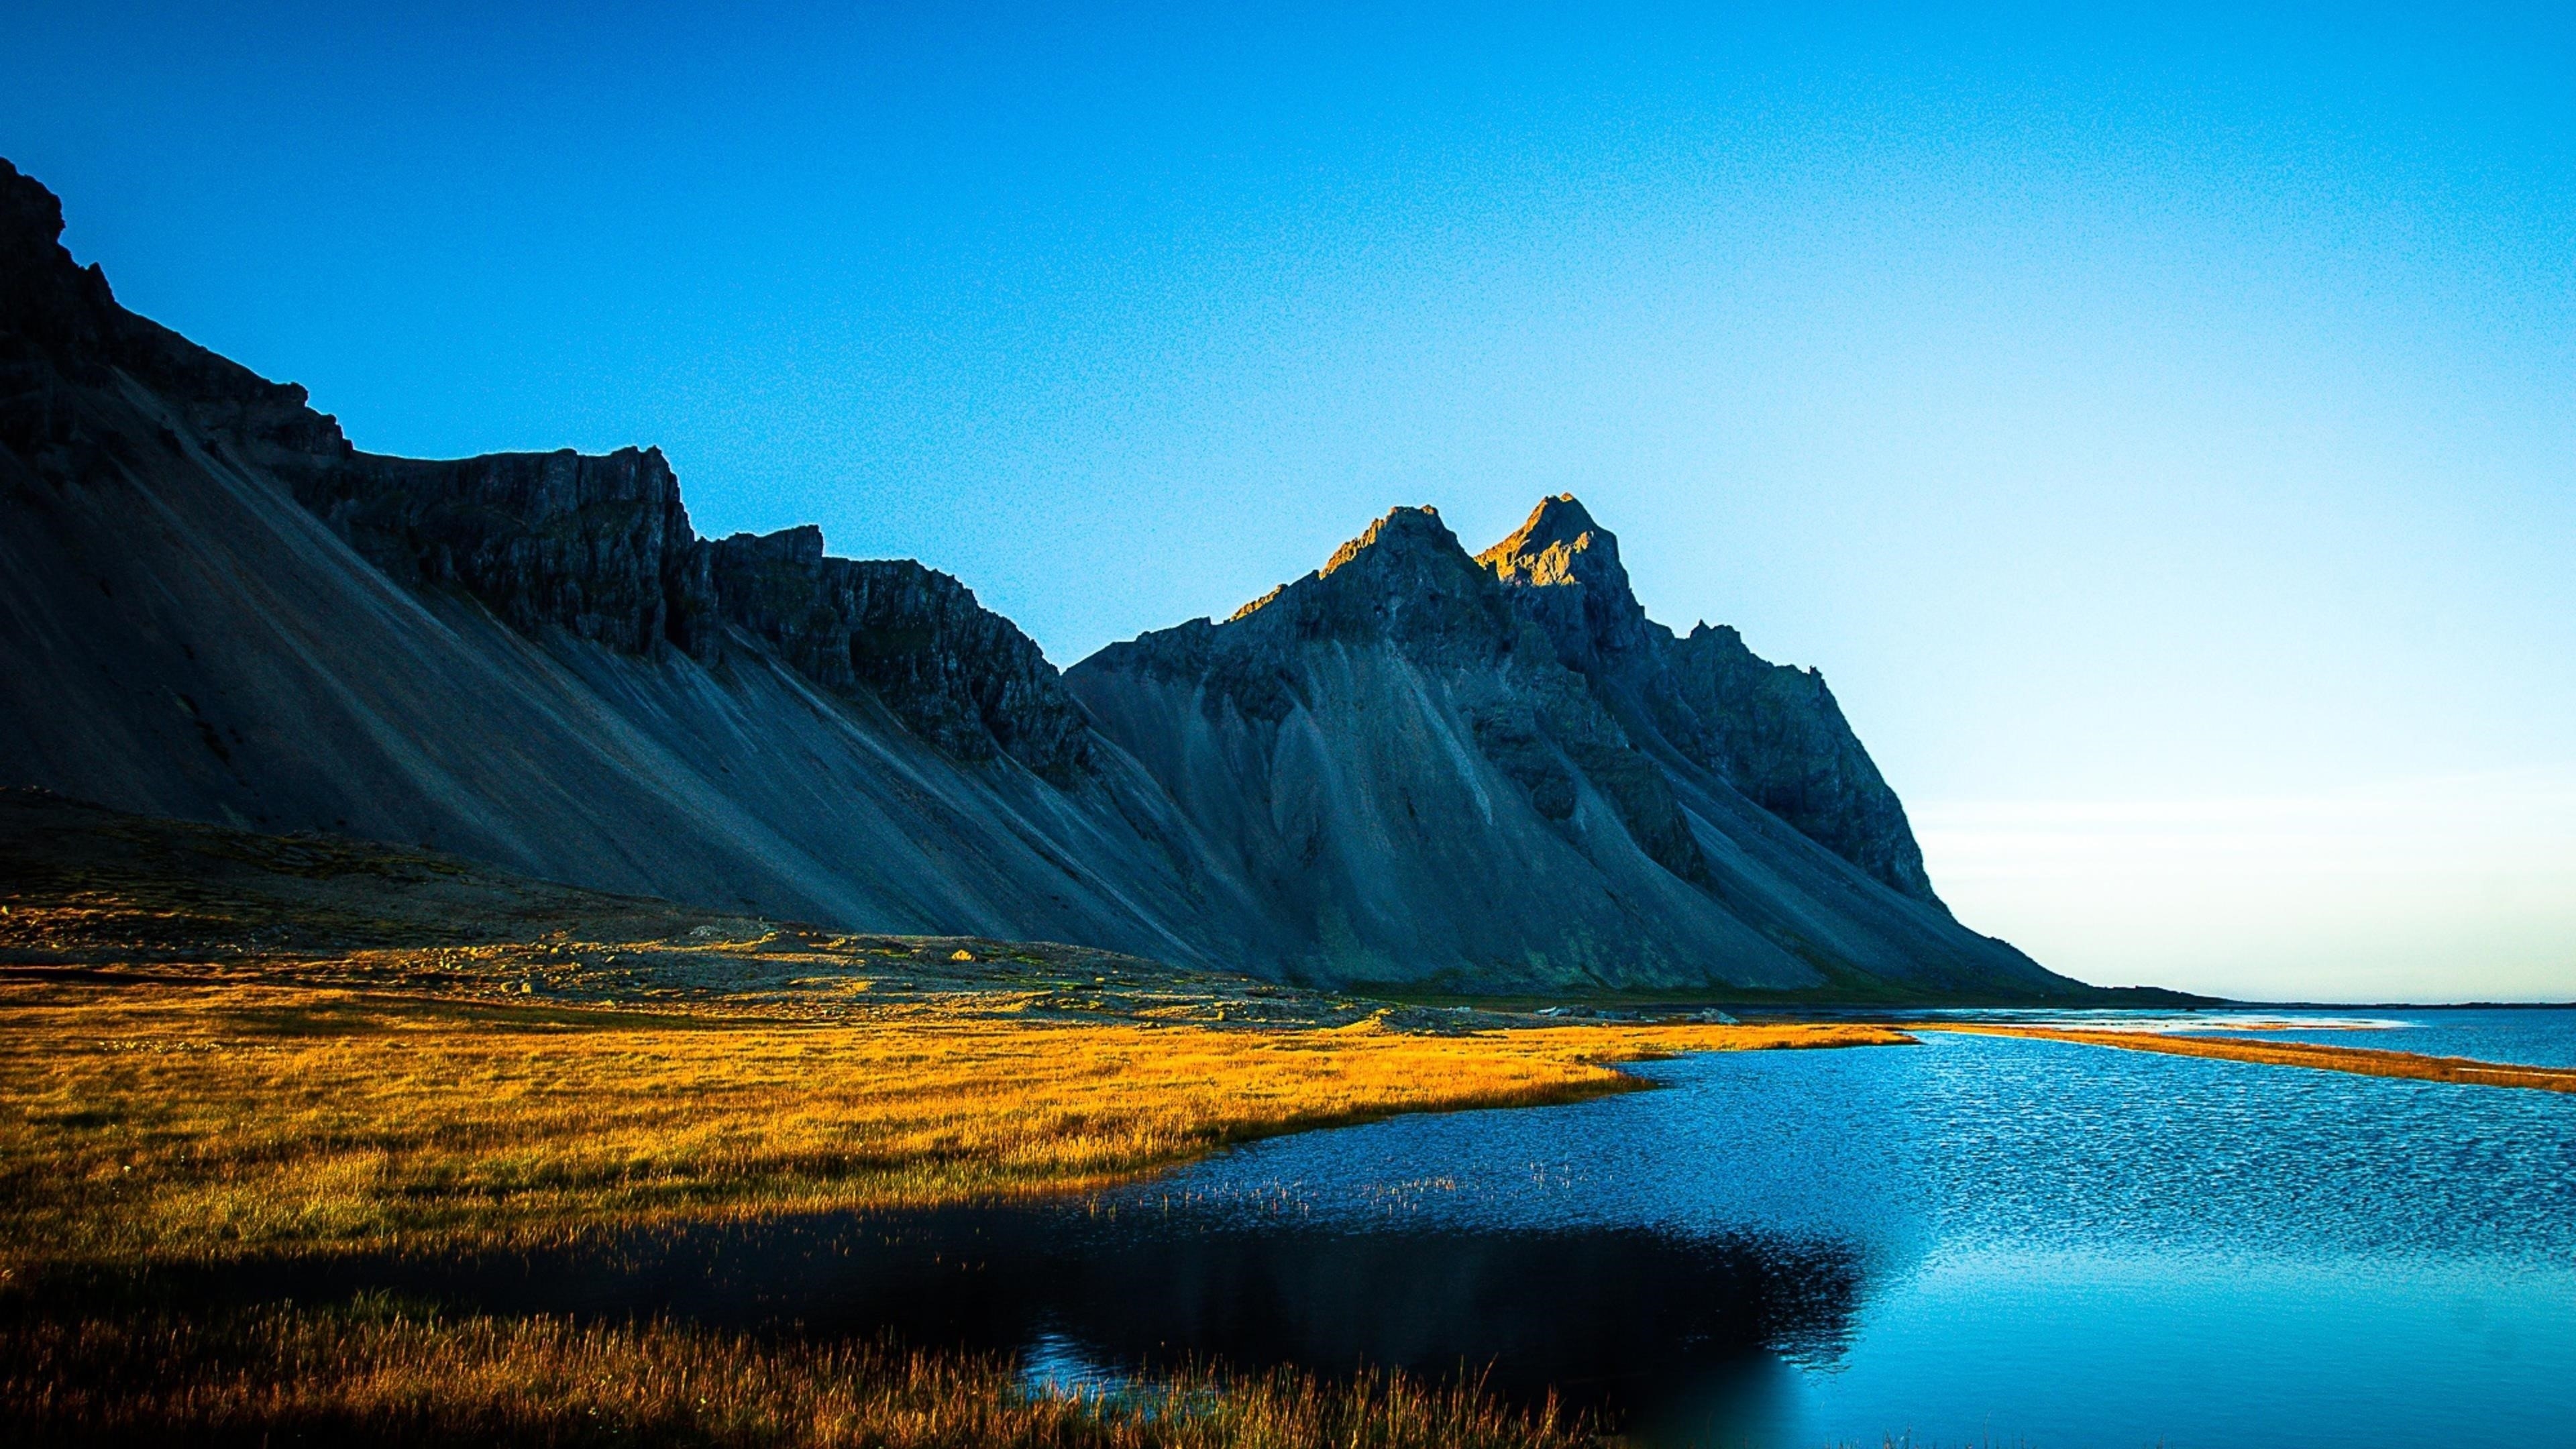 Покрытое травой озеро рядом с белой покрытой горой под голубым небом в дневное время природа обои скачать